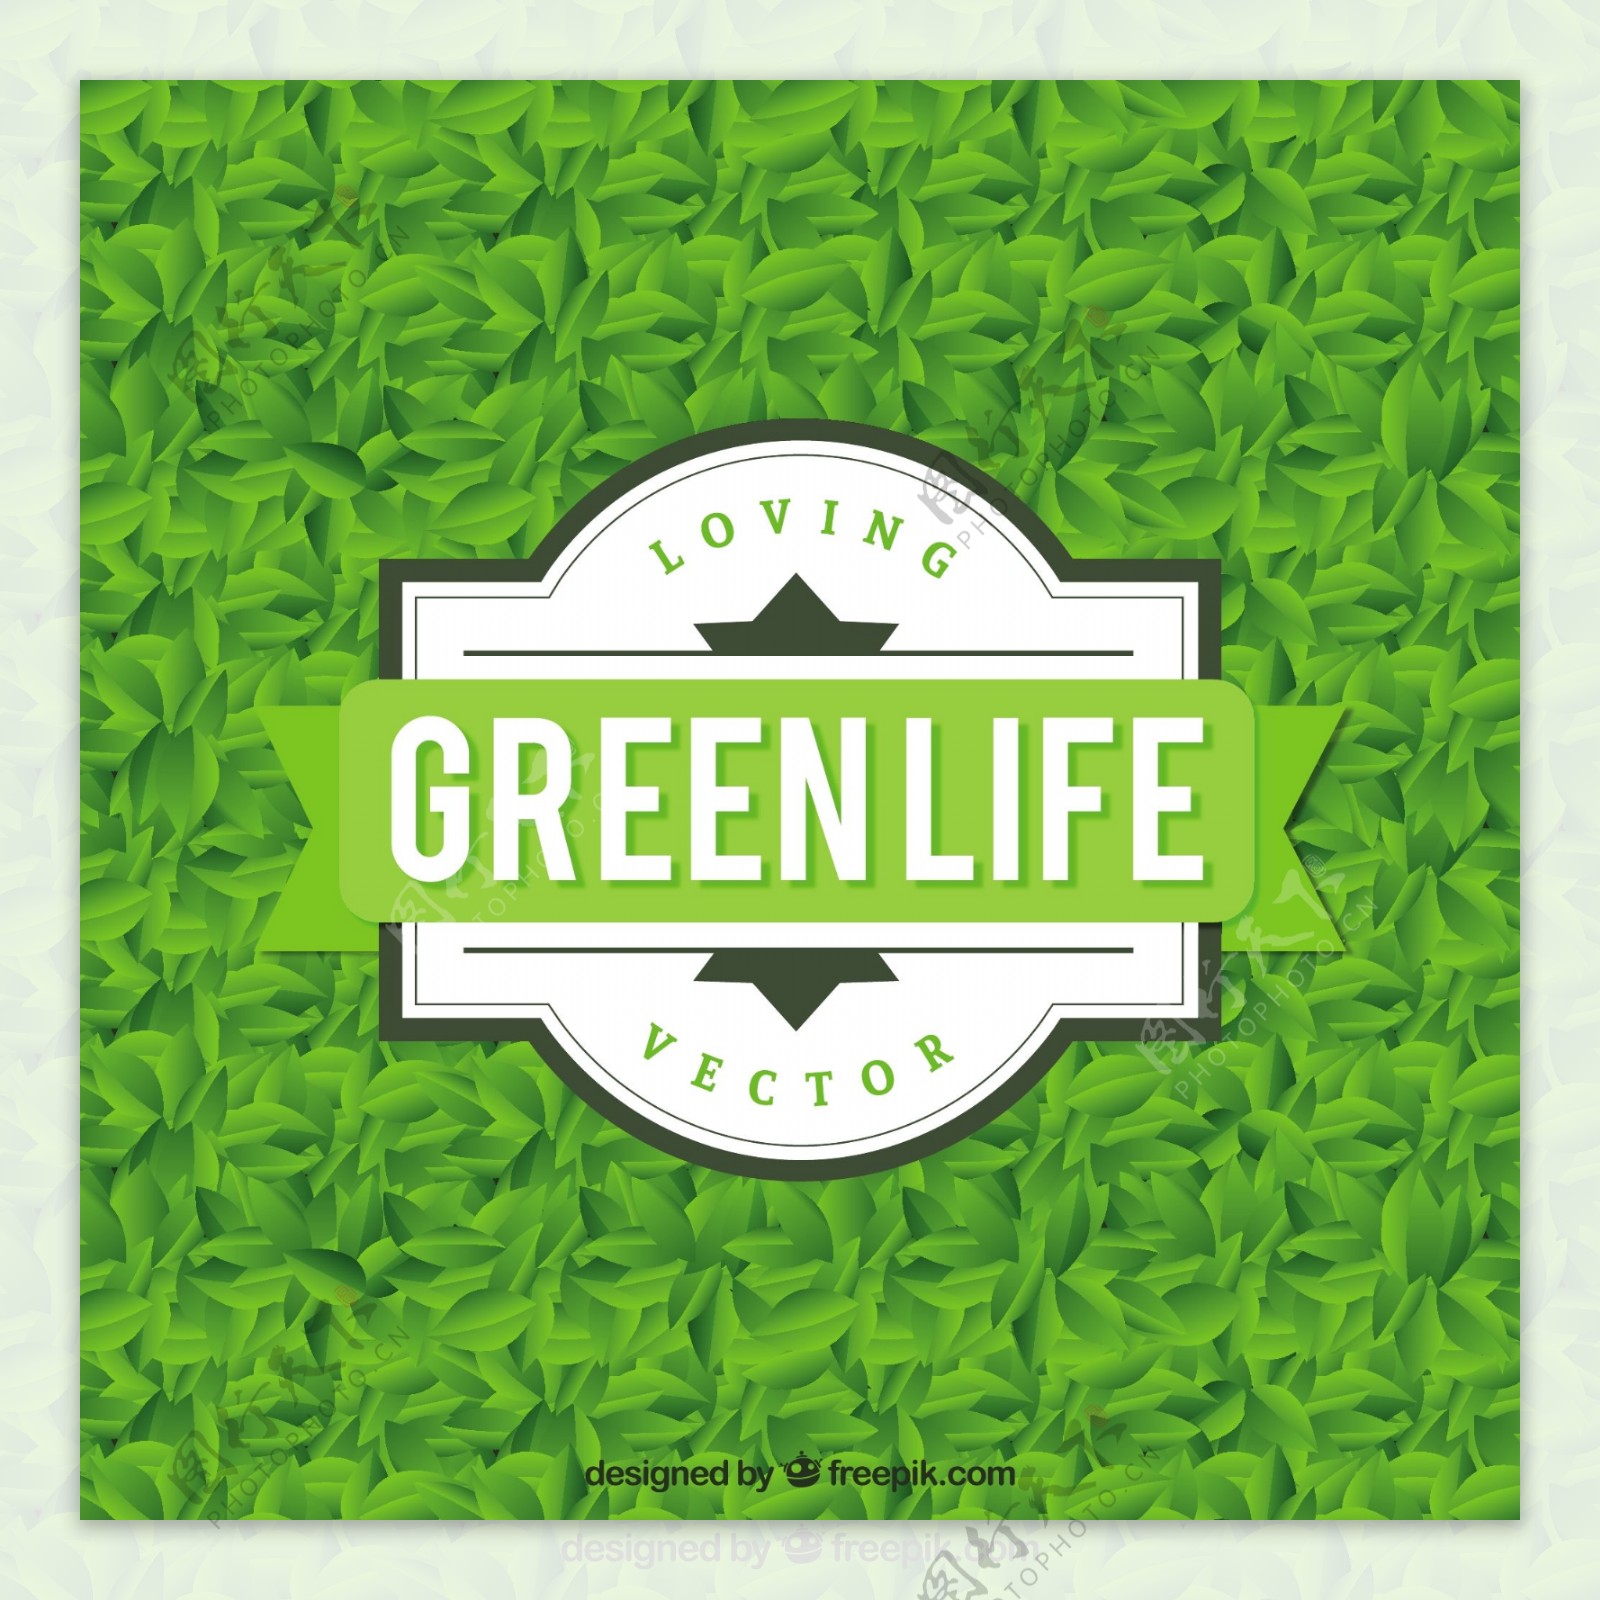 绿色生命的徽章